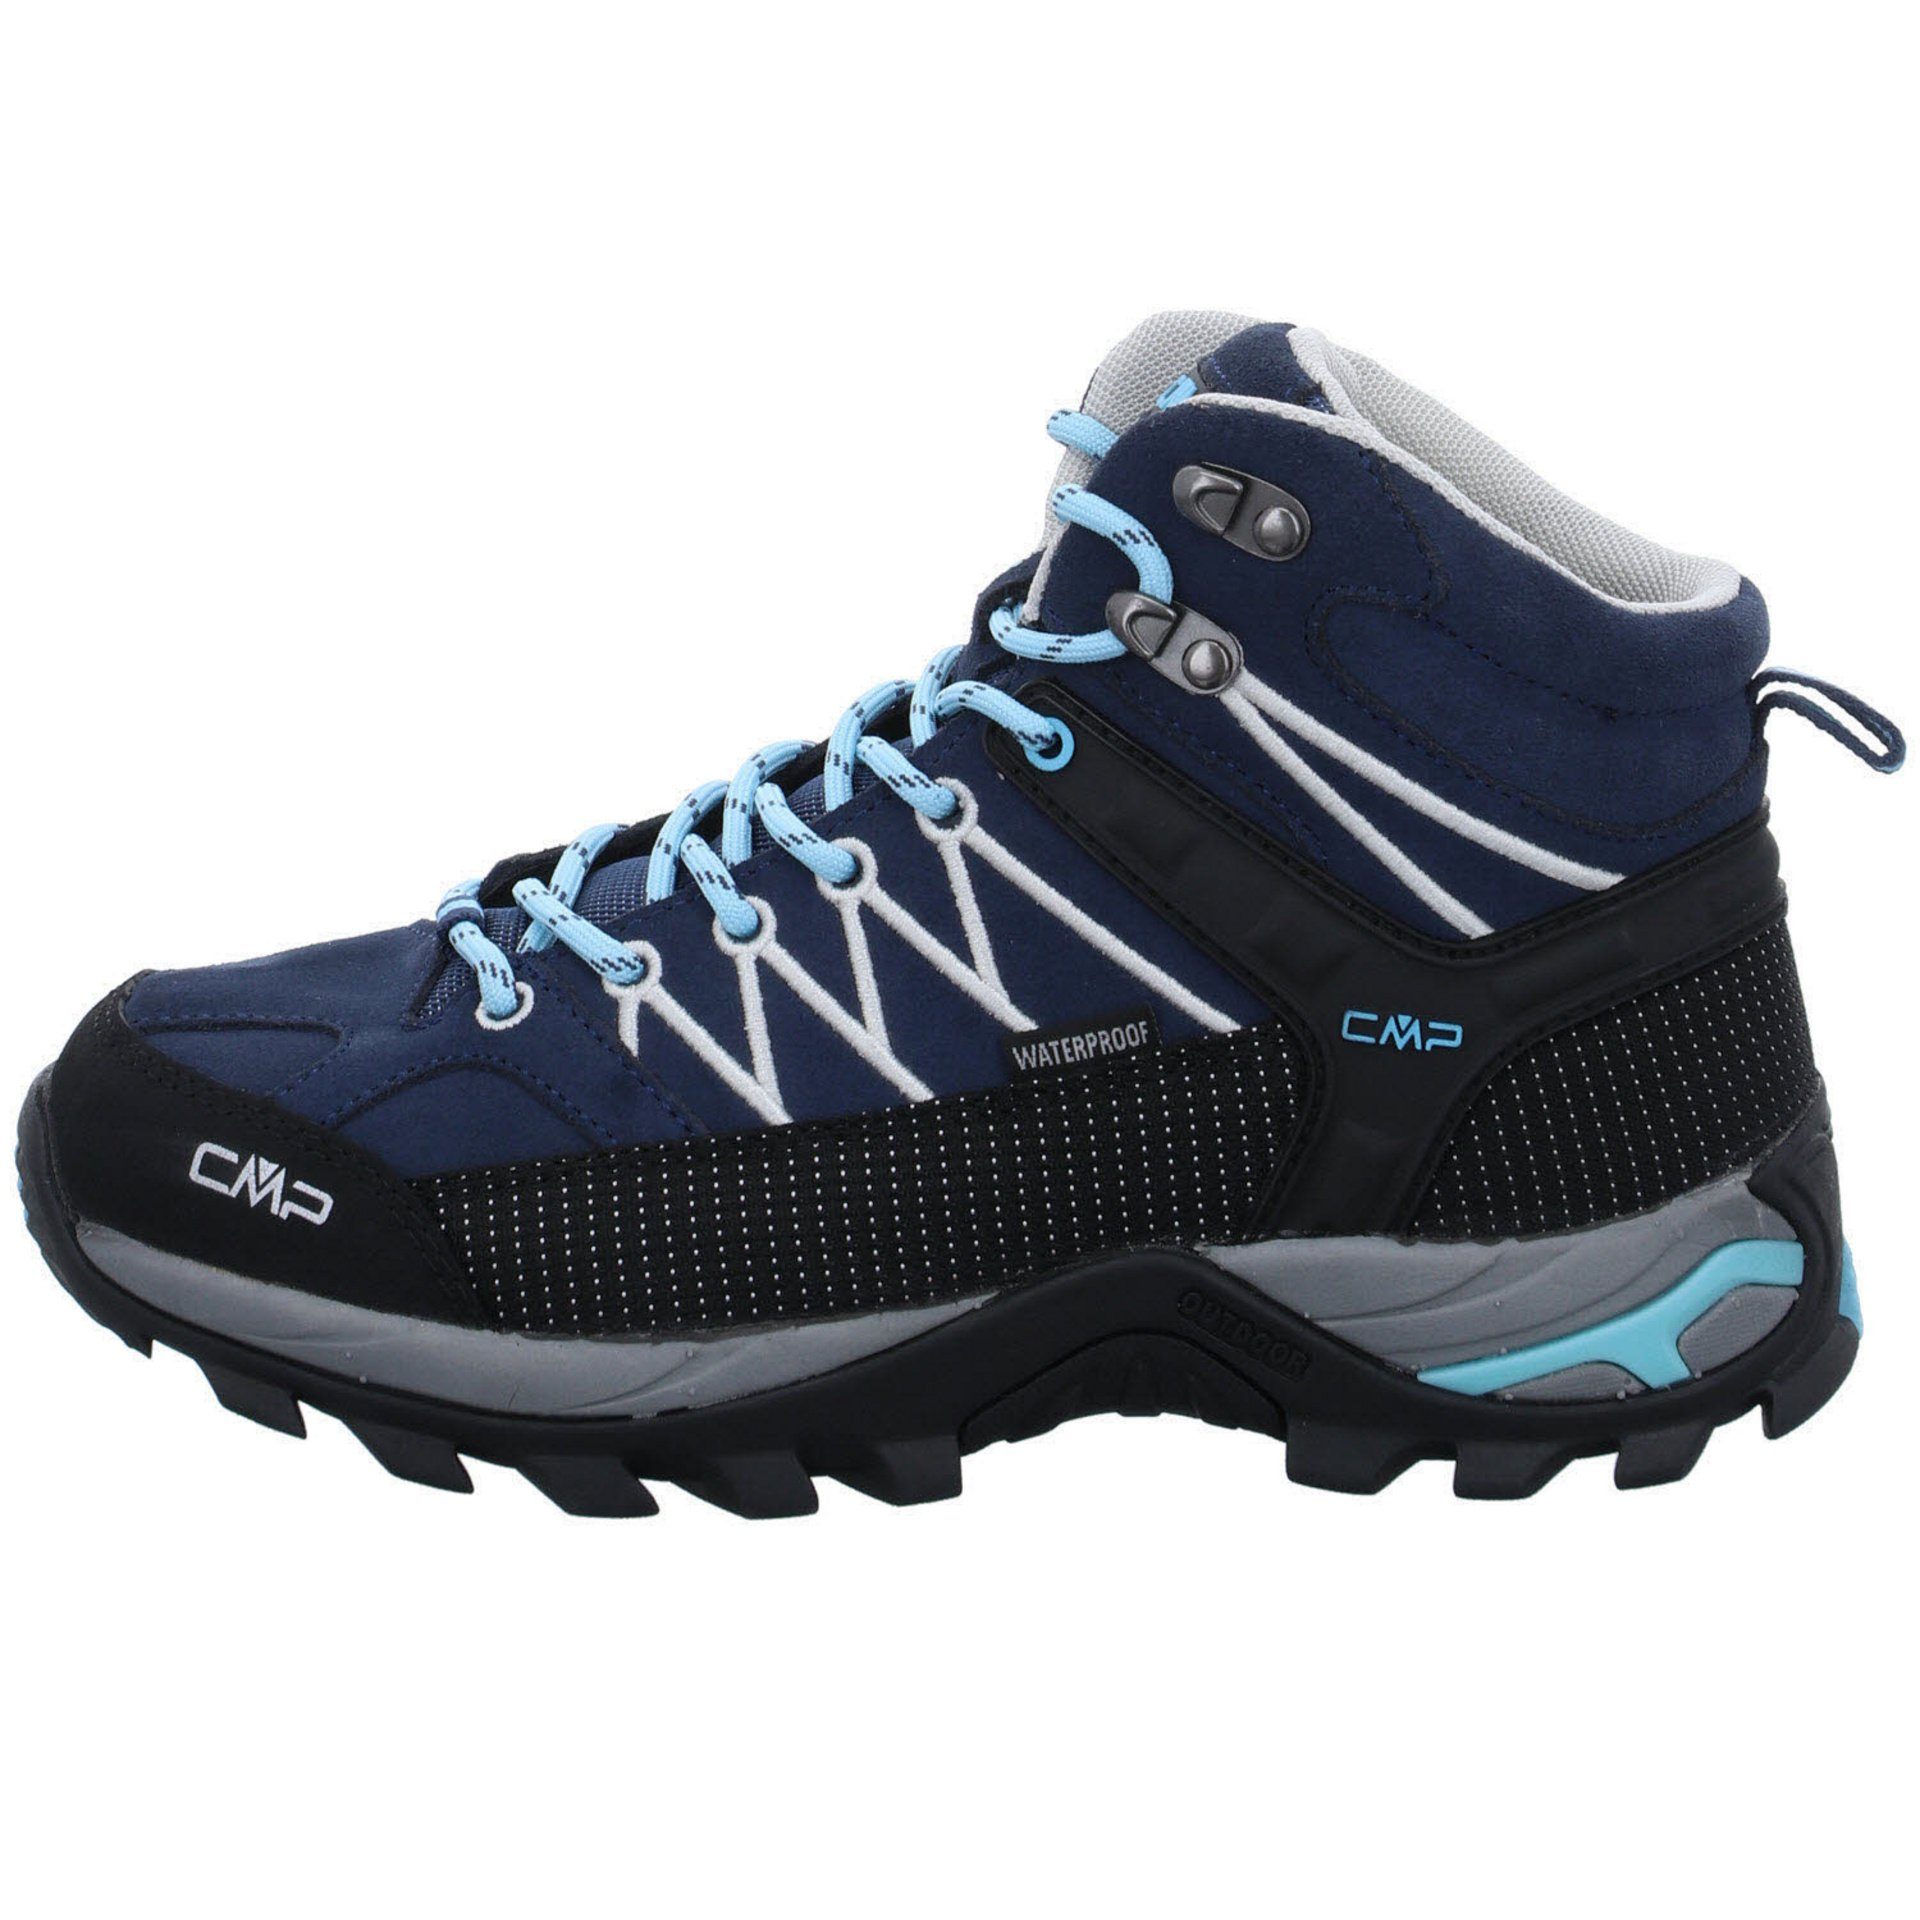 Rigel Outdoorschuh Leder-/Textilkombination Damen Outdoorschuh blau Schuhe CMP Mid CAMPAGNOLO Outdoor